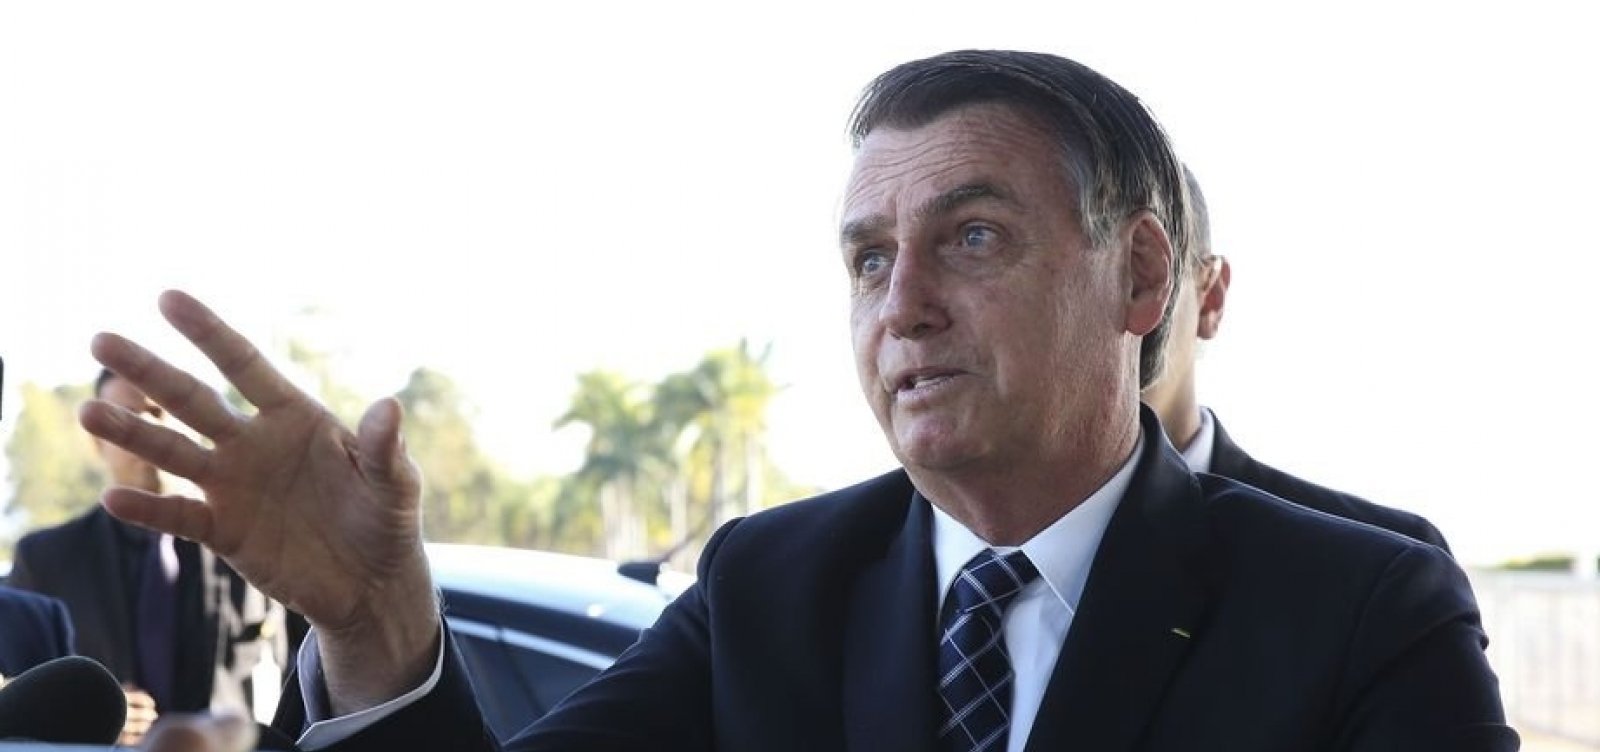 Delegados cogitam demissão coletiva após Bolsonaro tentar intervir na PF do RJ